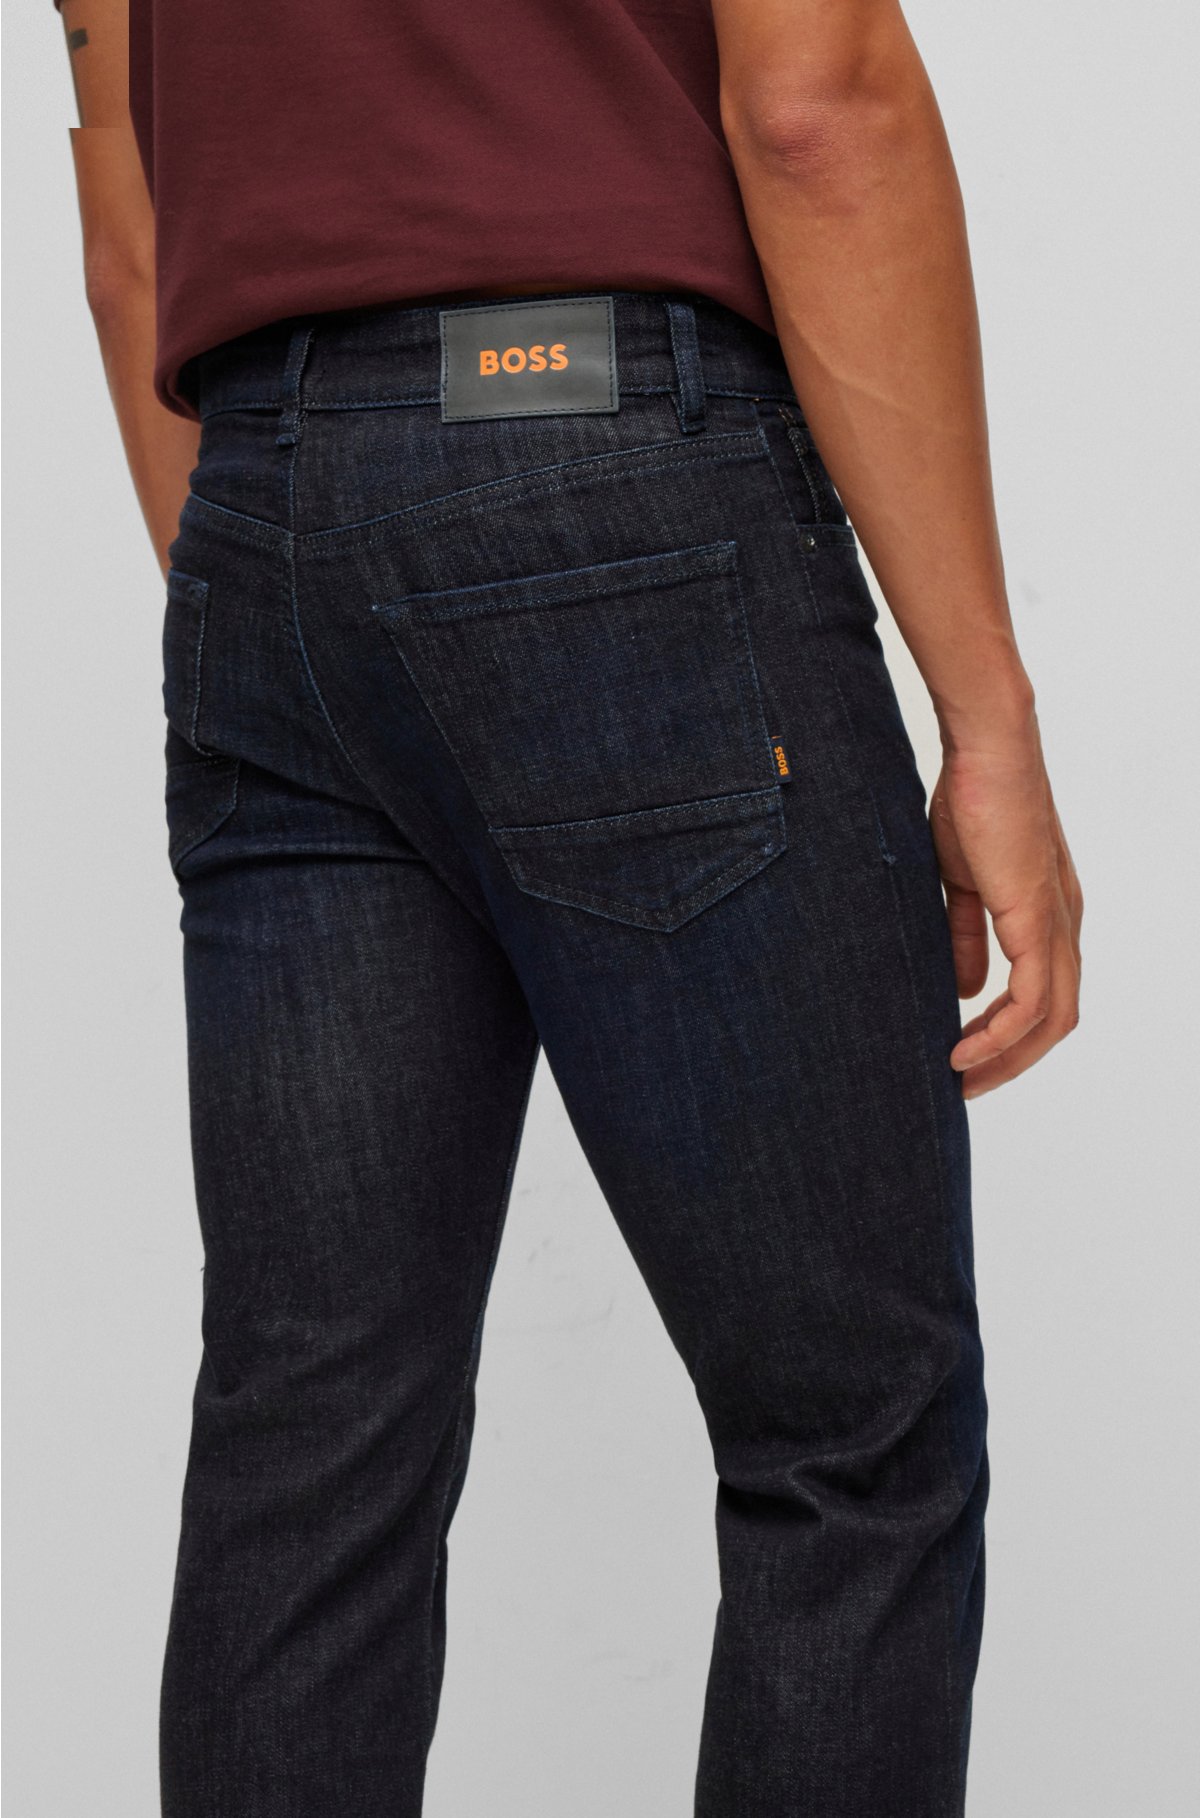 welzijn vijver duizend BOSS - Regular-fit jeans in blue super-stretch denim